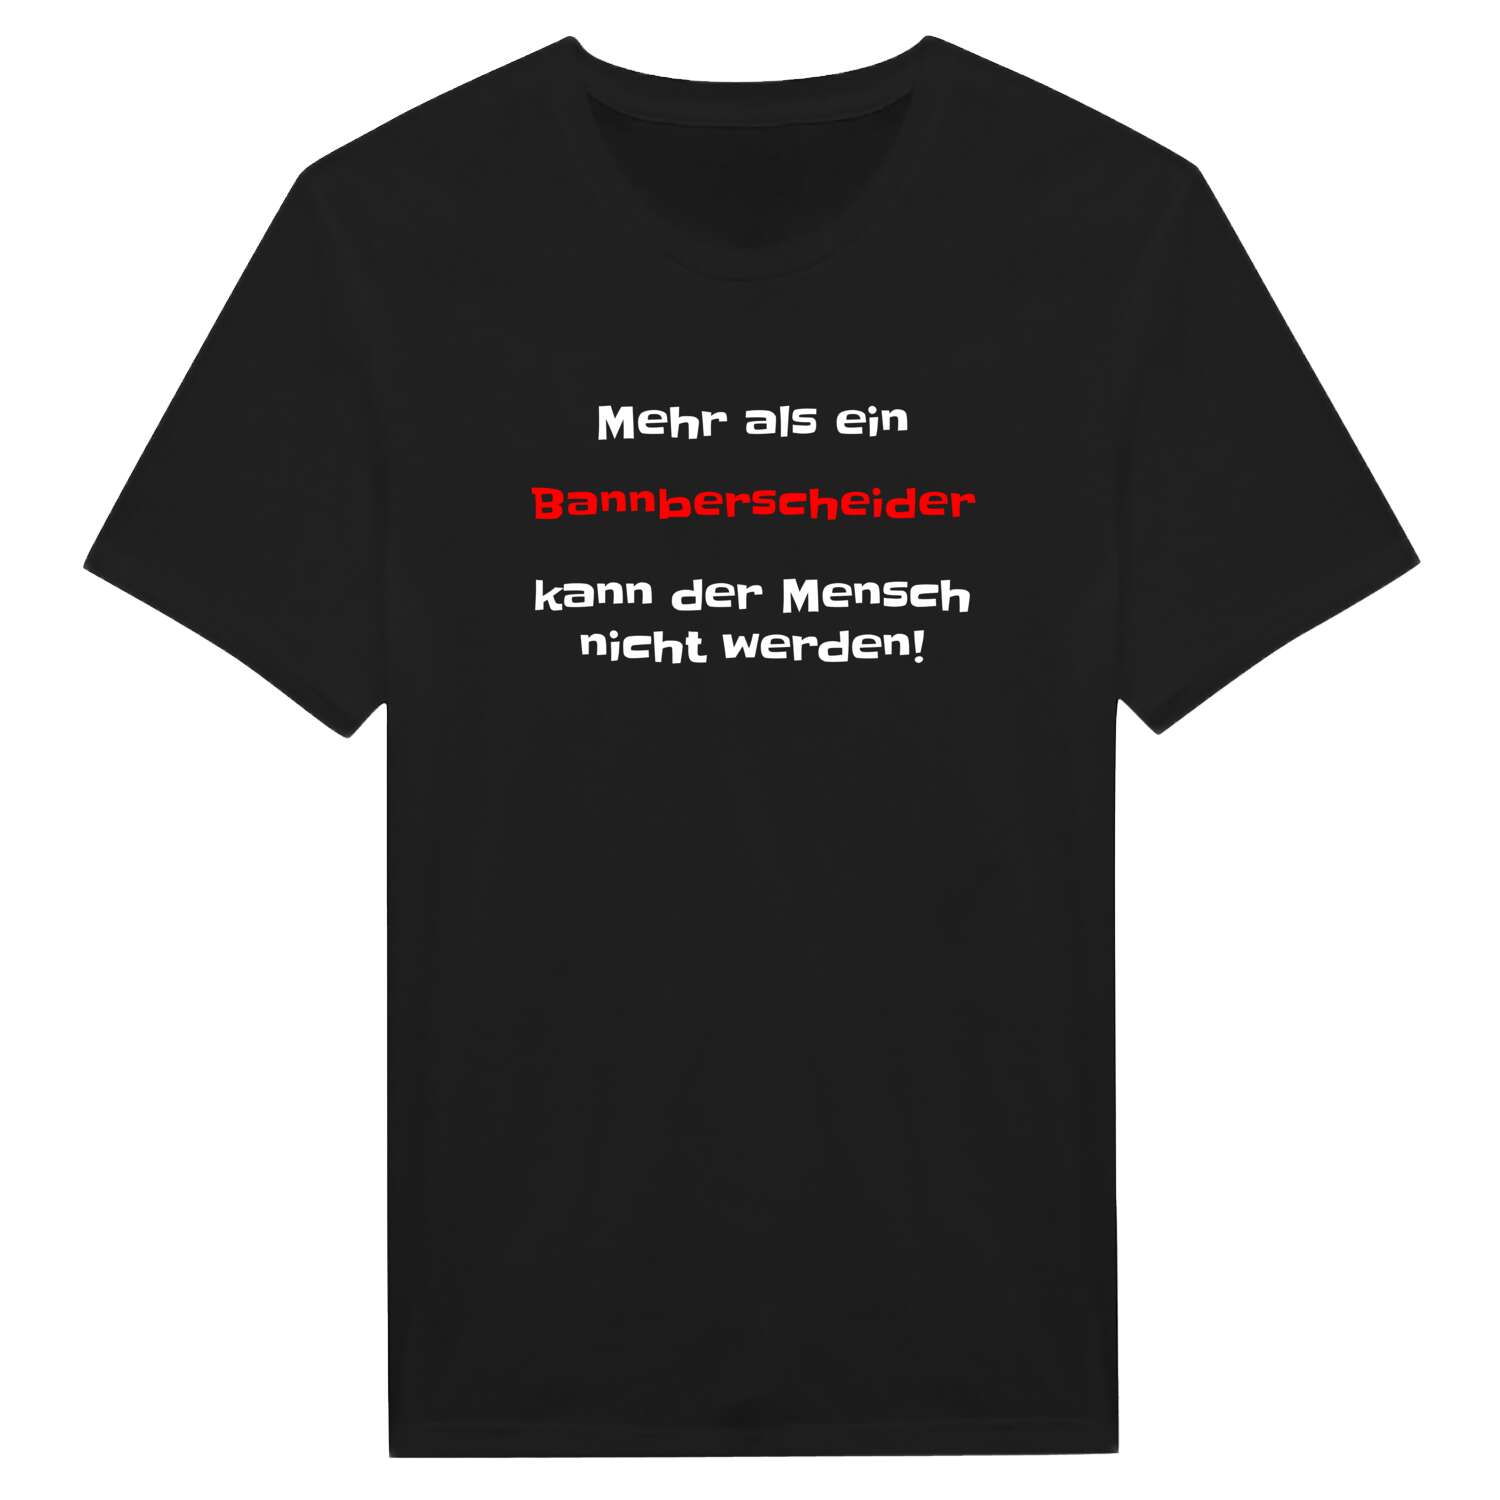 Bannberscheid T-Shirt »Mehr als ein«